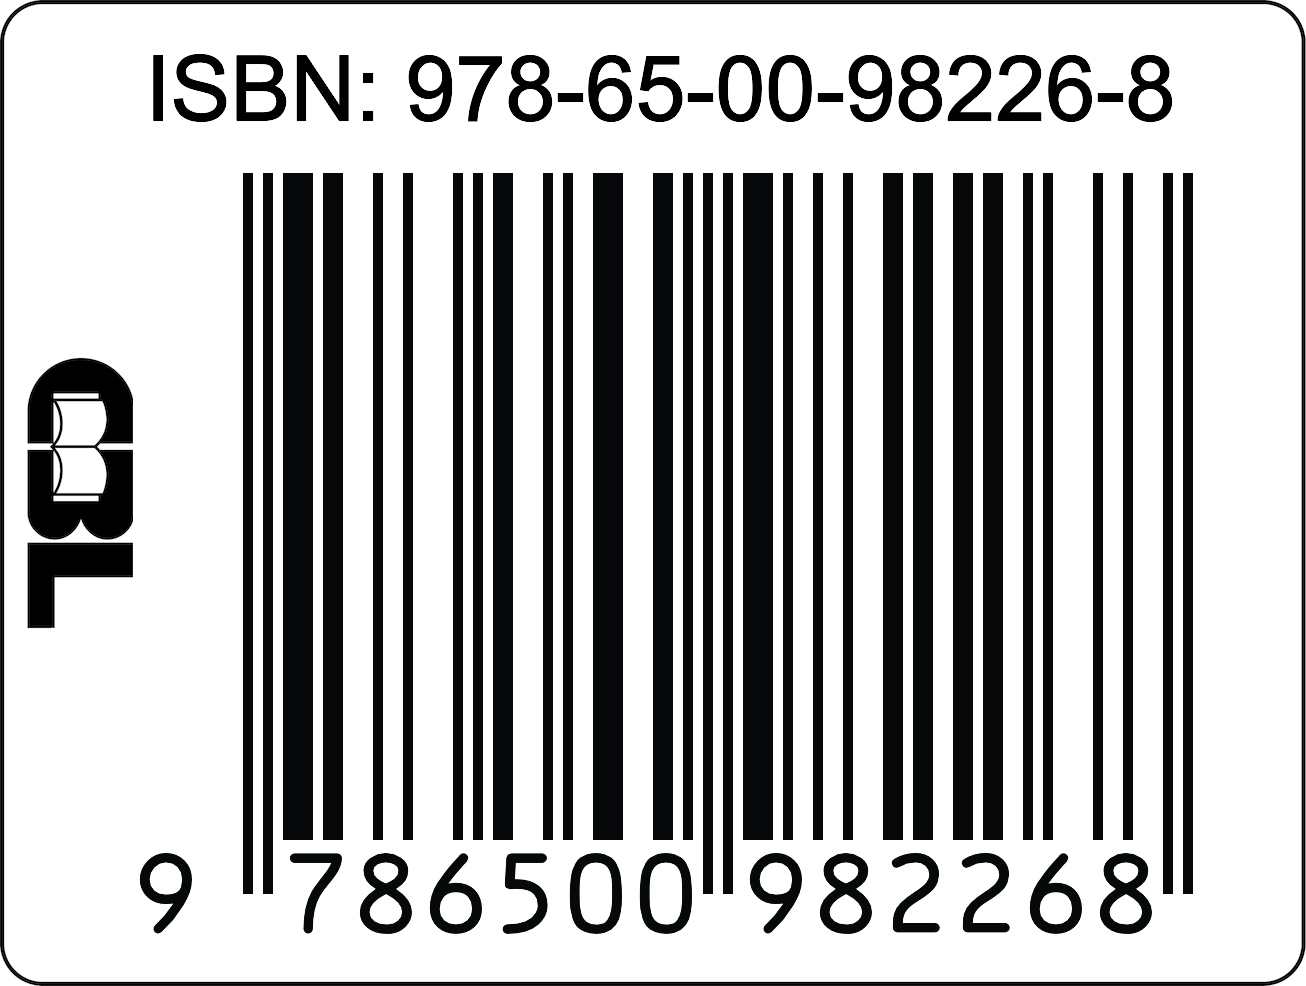 ISBN16a